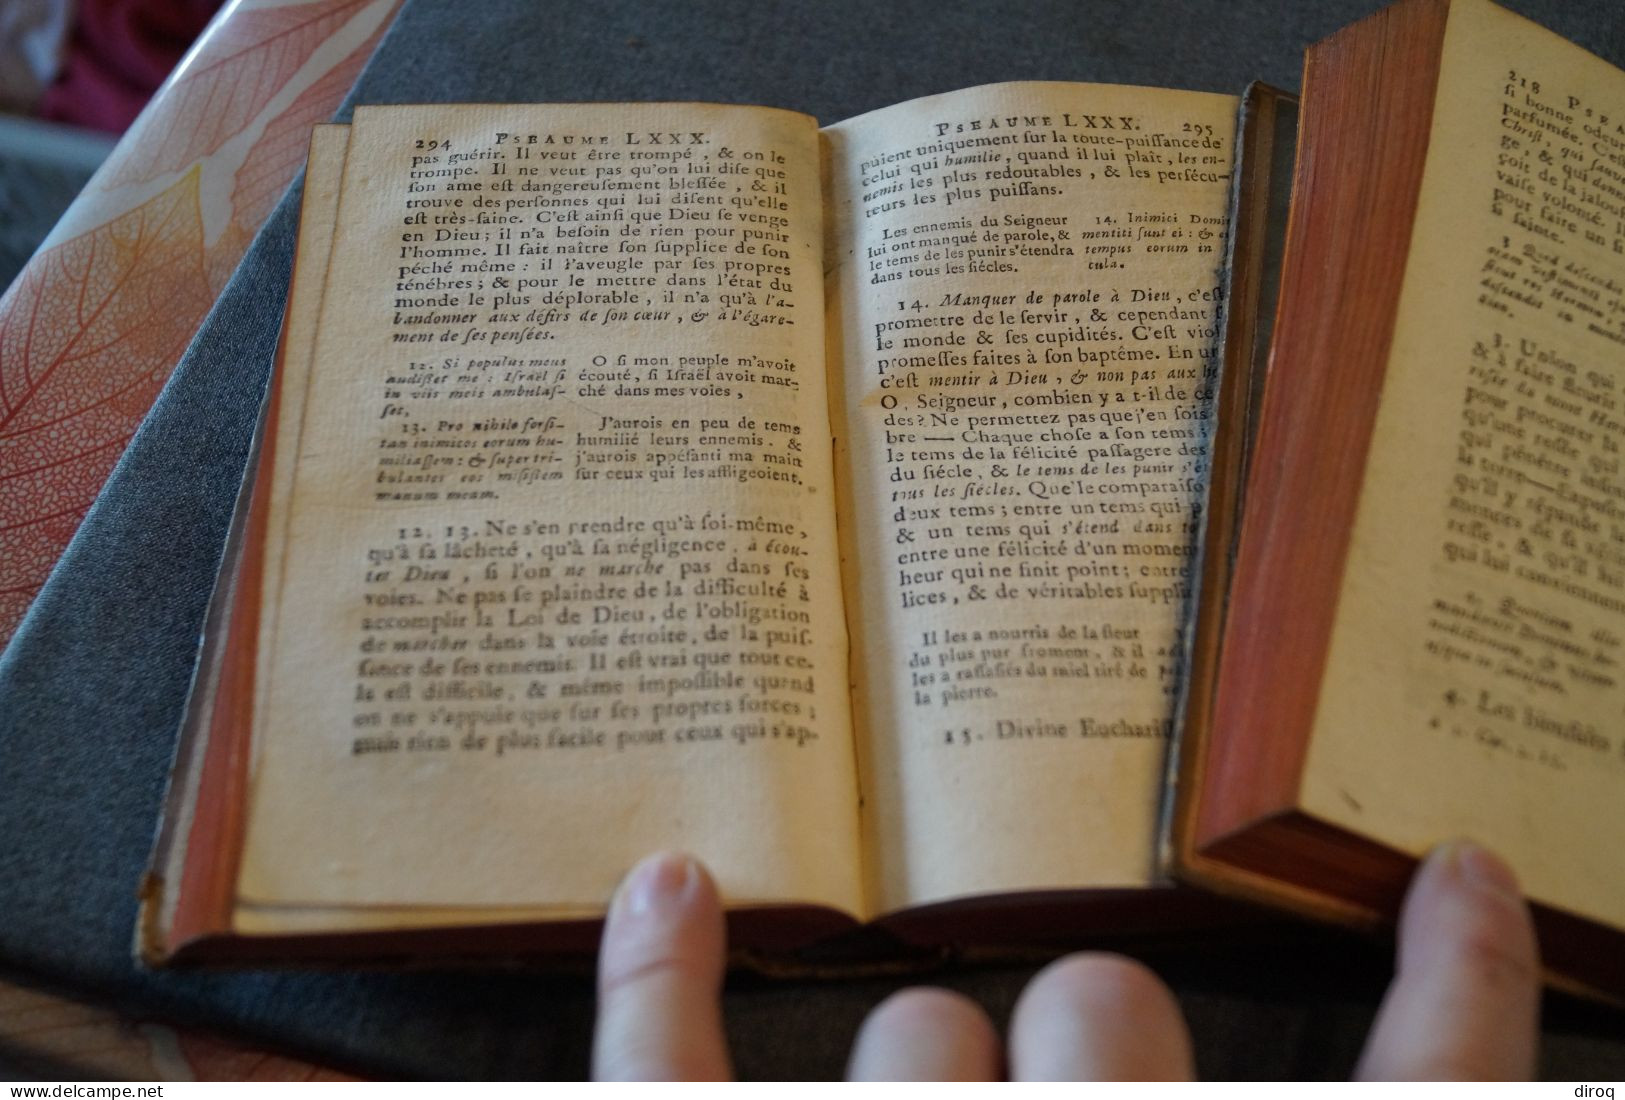 Les Psaumes de David,1700,complet en 3 tomes,vendu en l'état,550 pages-564 pages et 450 pages,17,5 Cm./10,5 Cm.